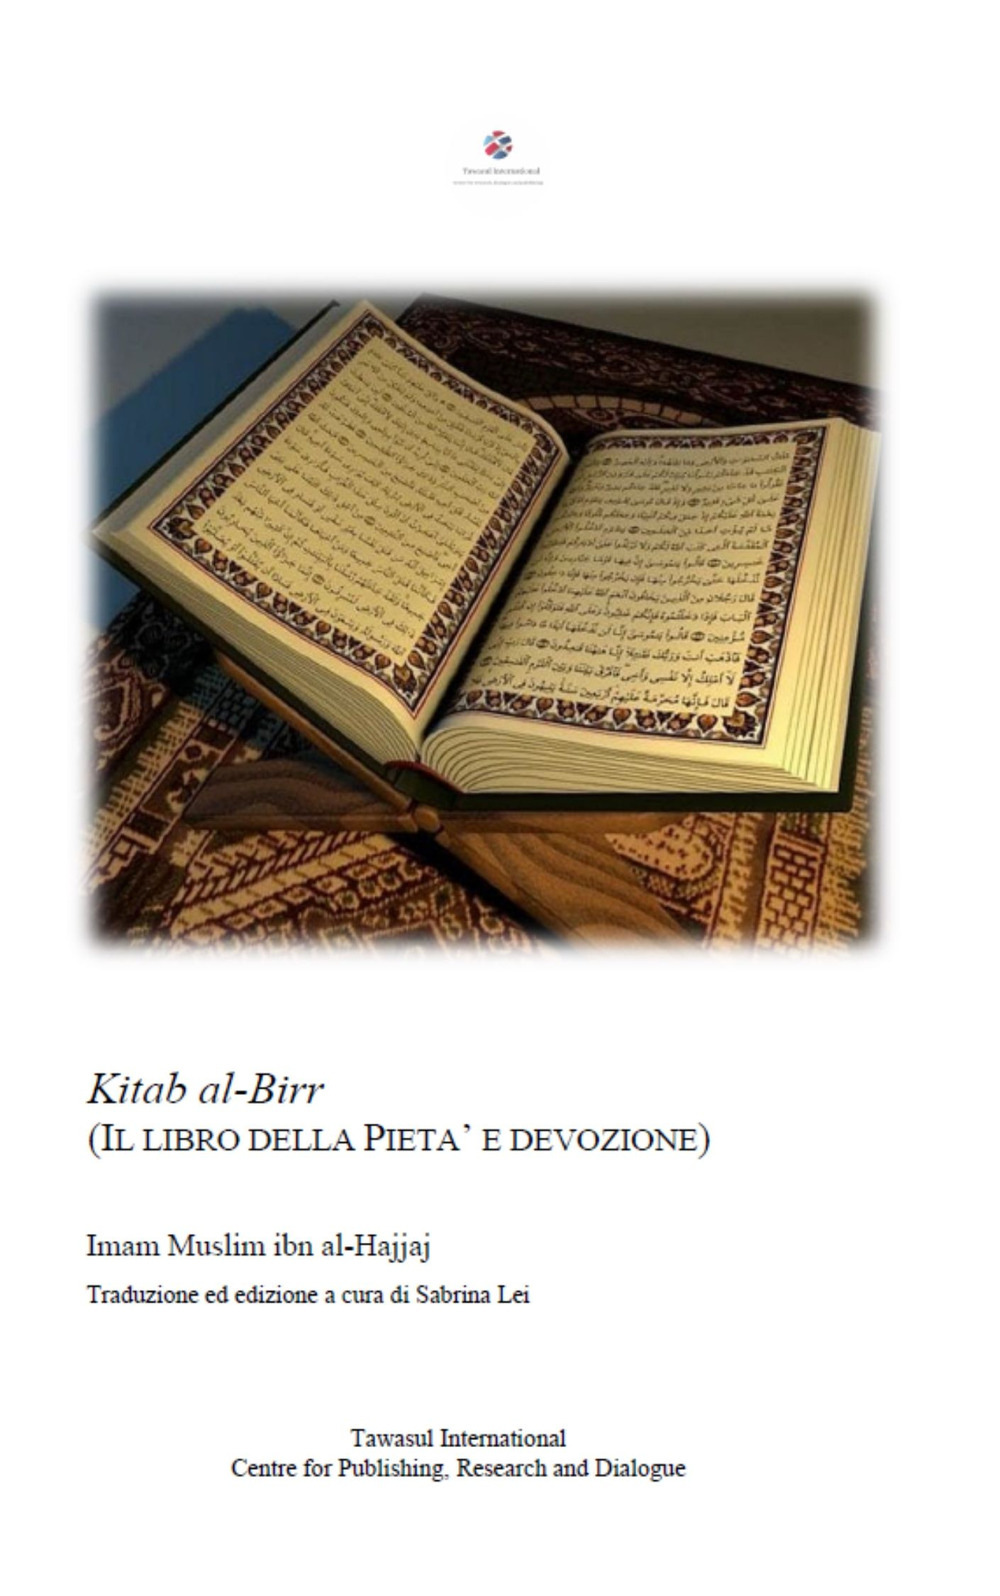 Kitab al-Birr. Il libro della pietà e devozione